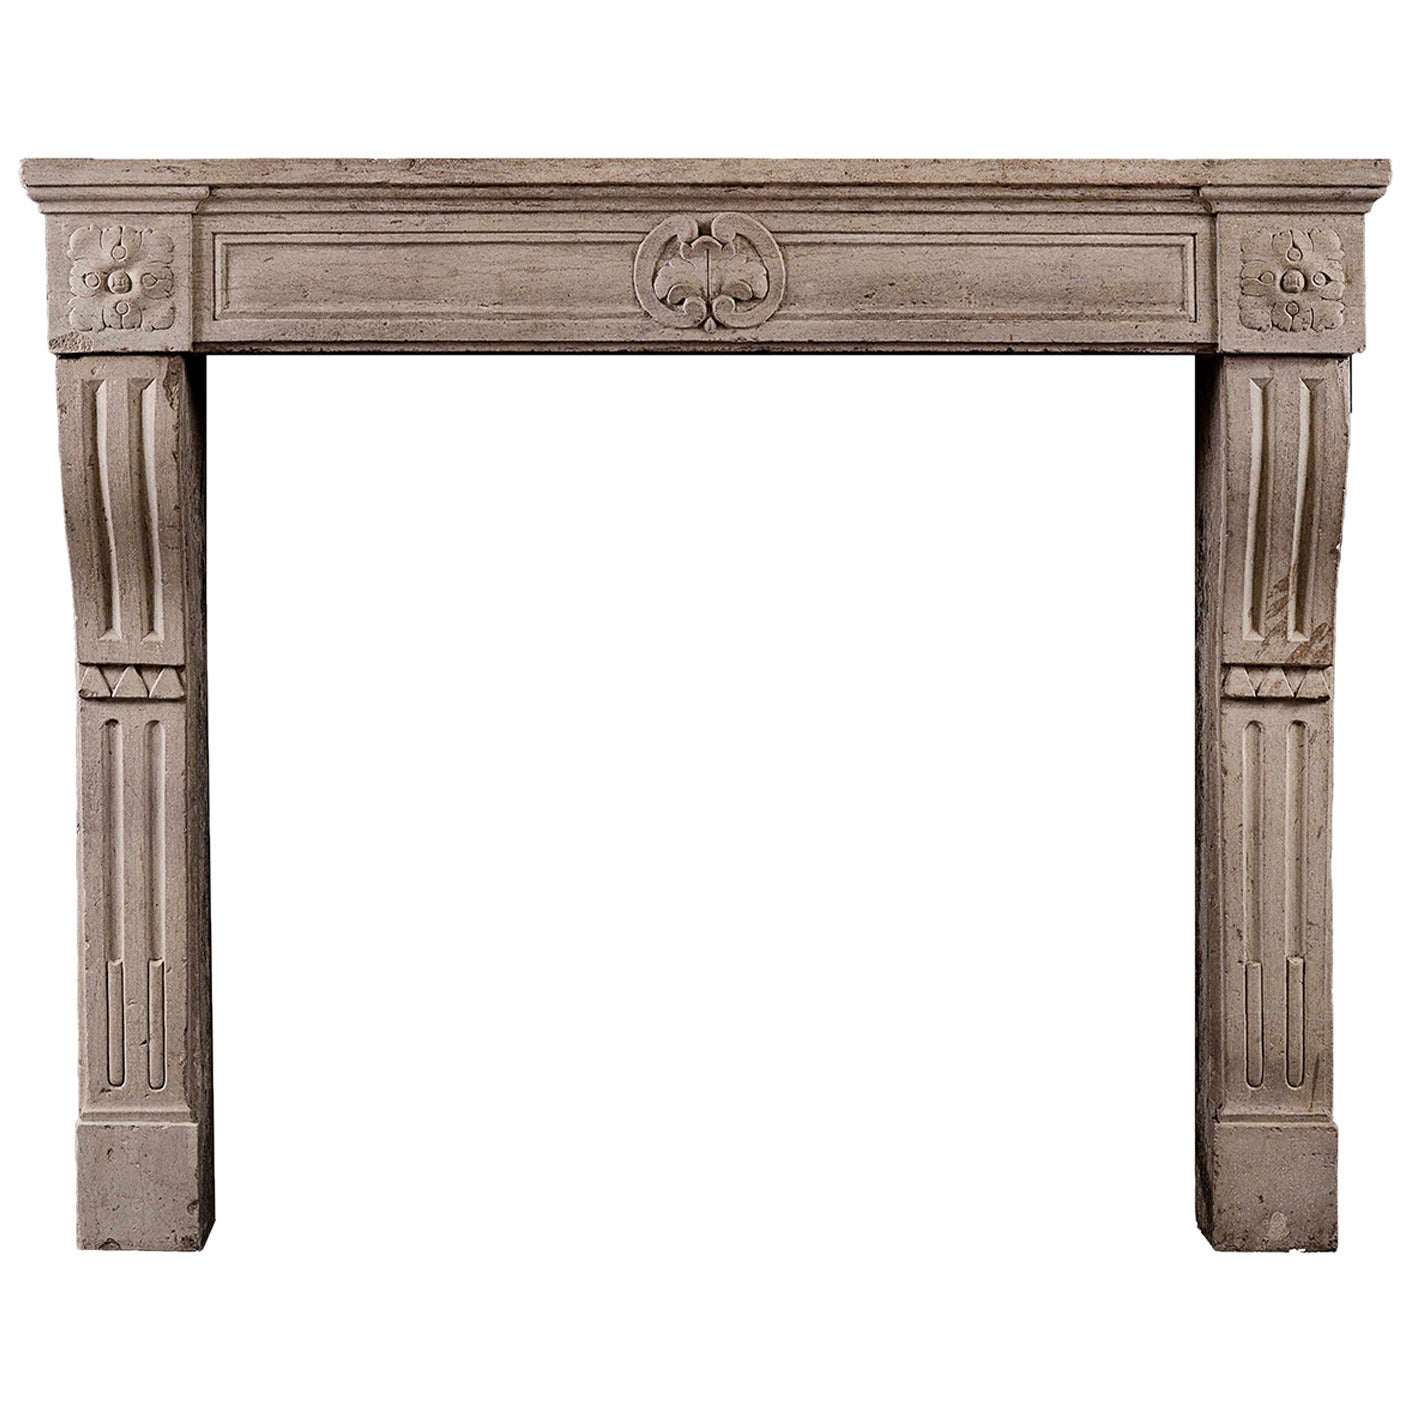 Period Louis XVI Limestone Fireplace Mantel For Sale